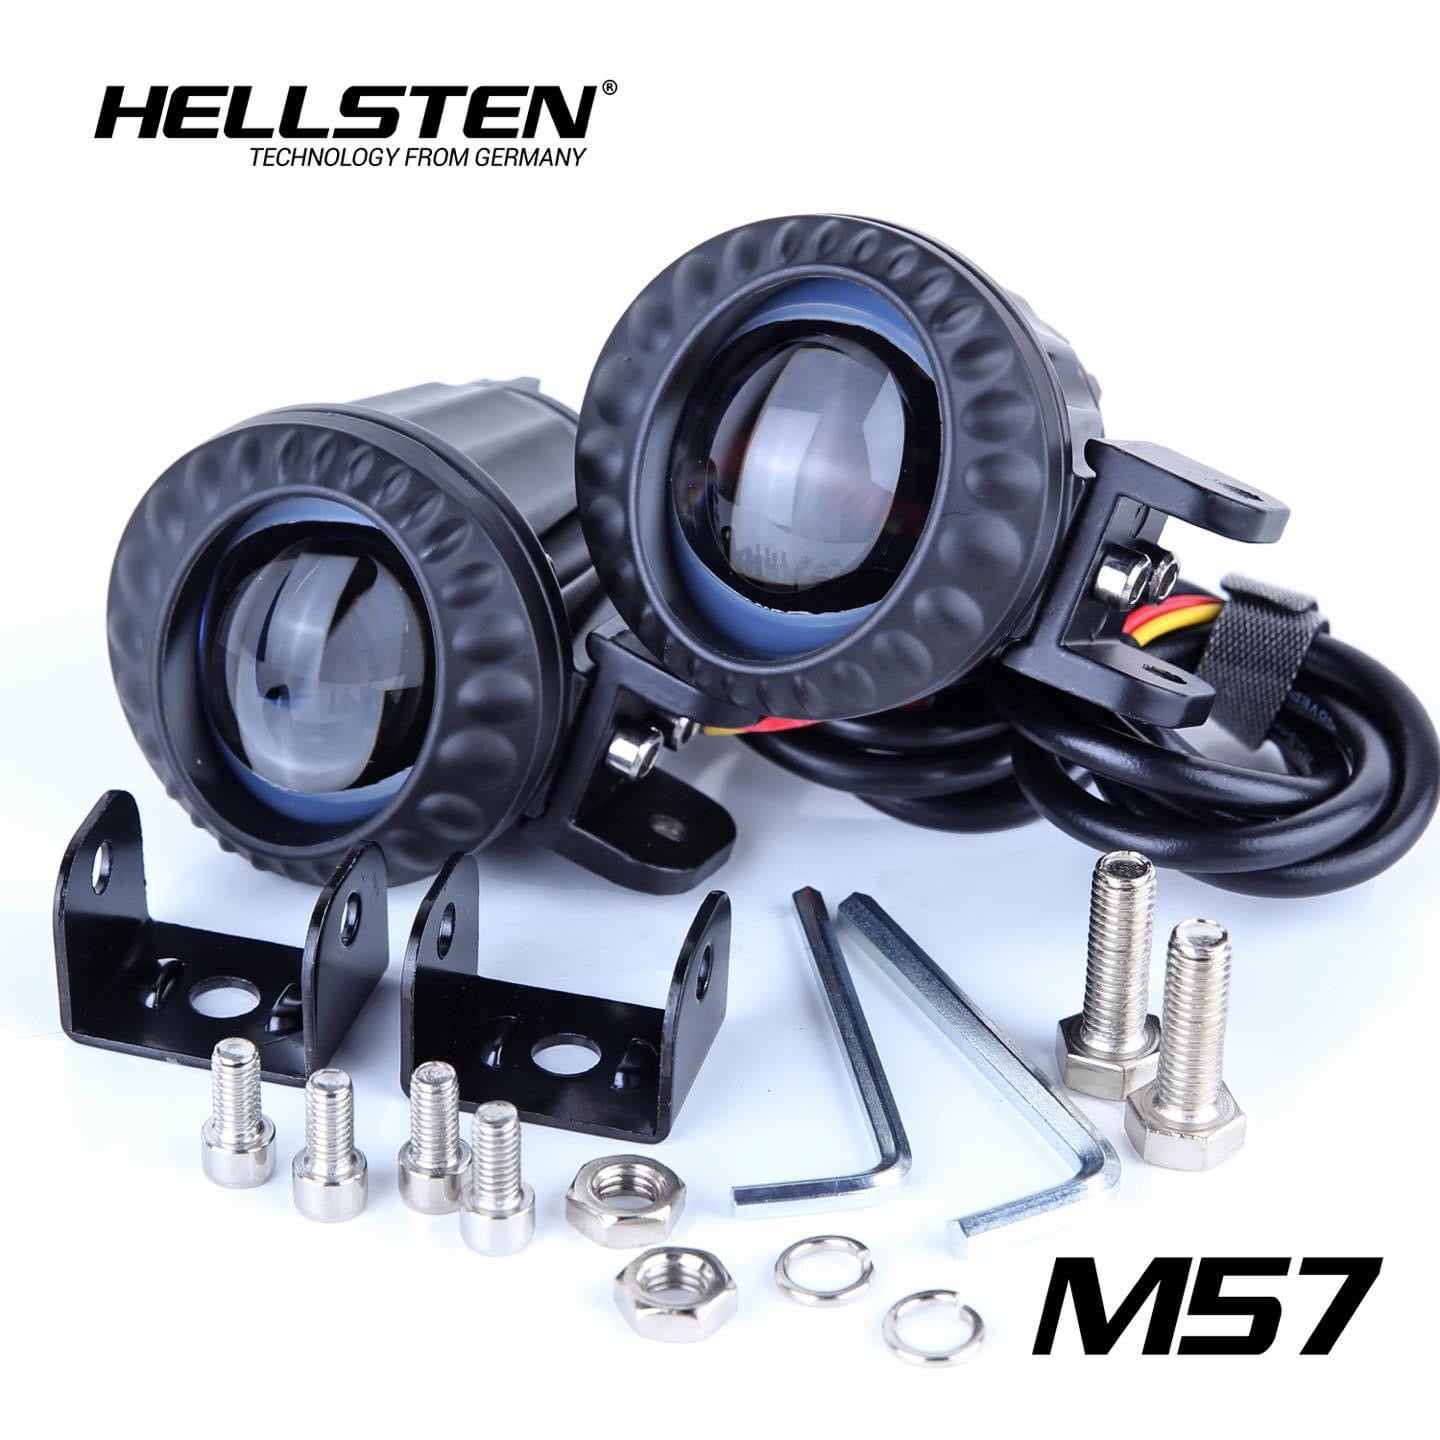 Hellsten M57 - Hellsten LED Philippines